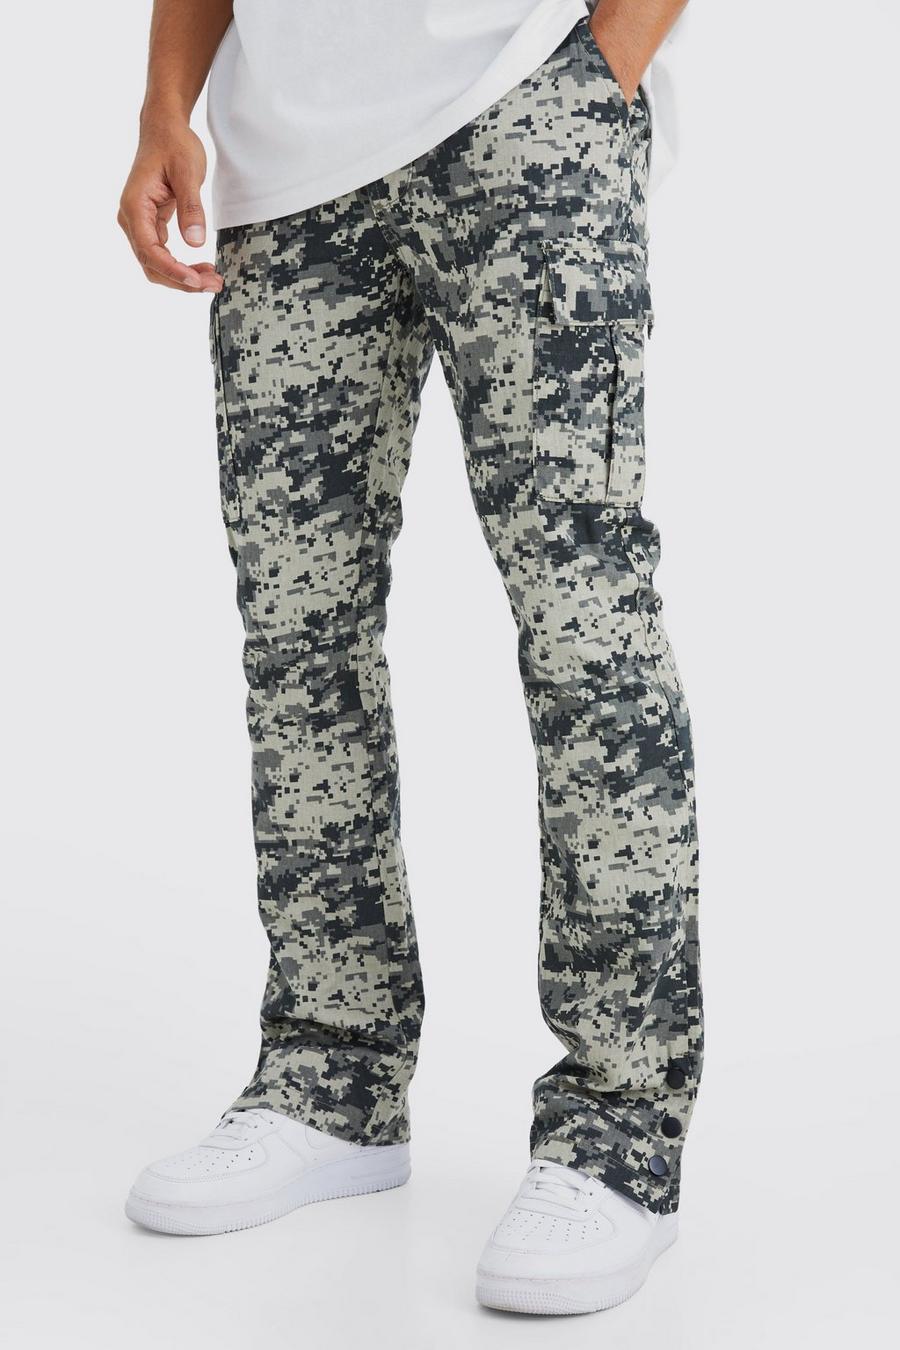 Pantaloni Cargo Slim Fit in fantasia militare con bottoni a pressione sul fondo, Charcoal